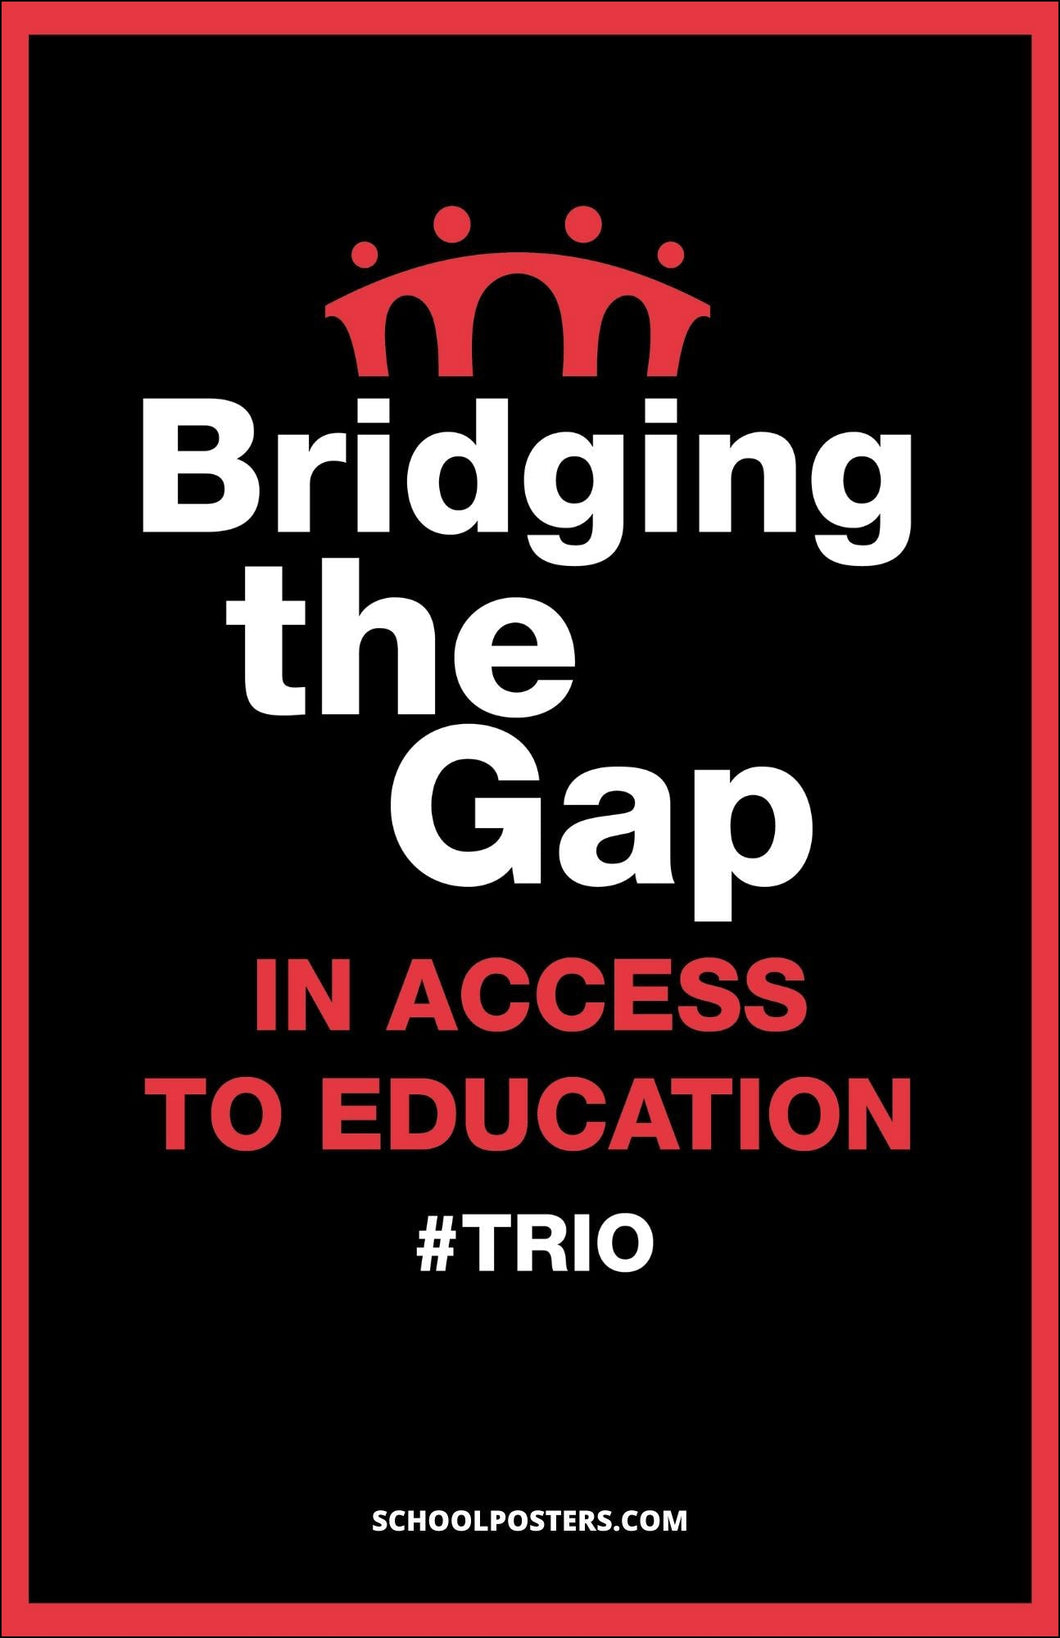 Bridging The Gap TRIO Poster